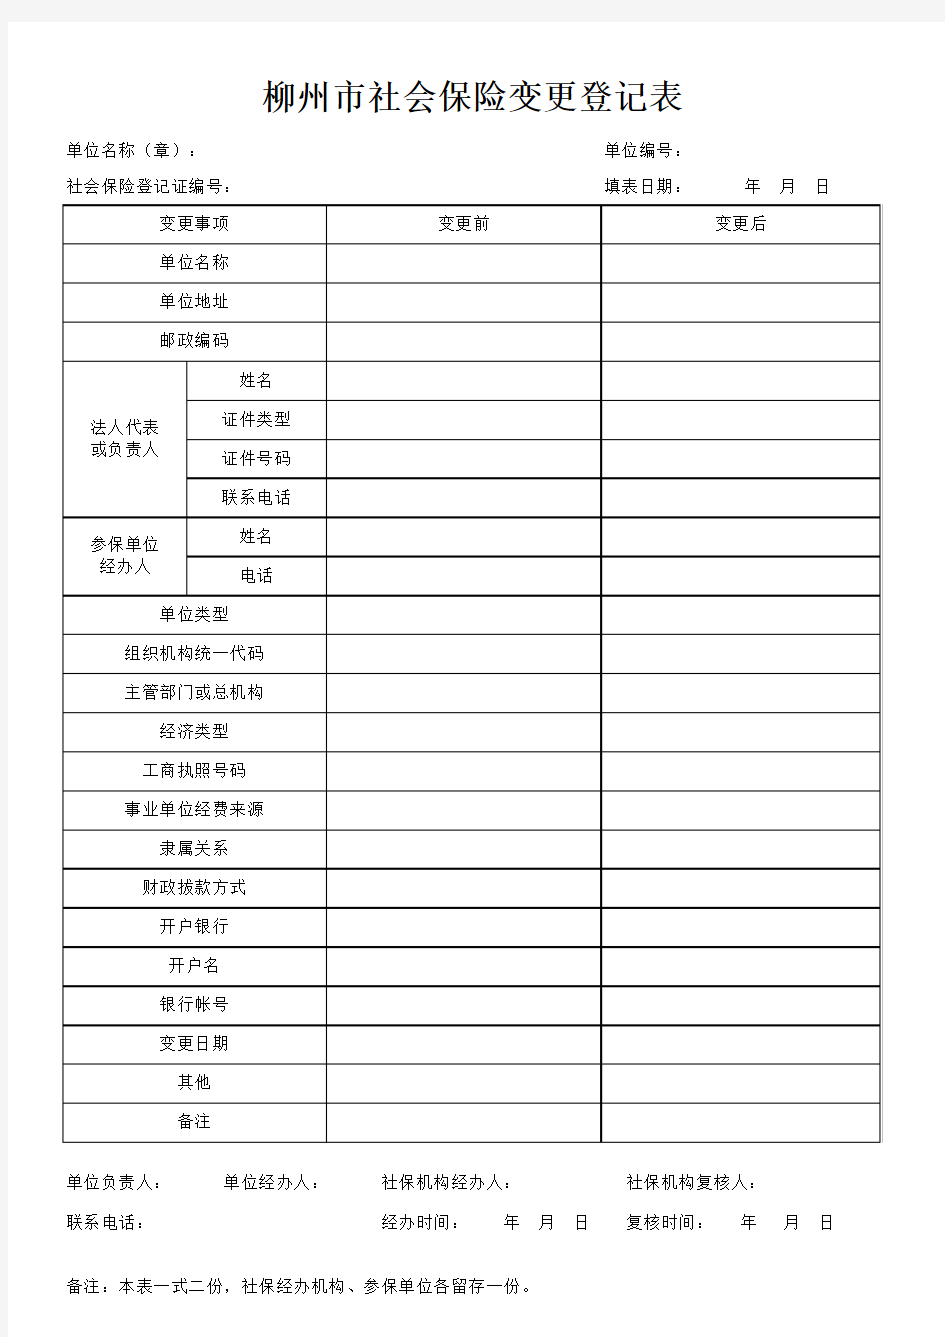 柳州市社会保险变更登记表